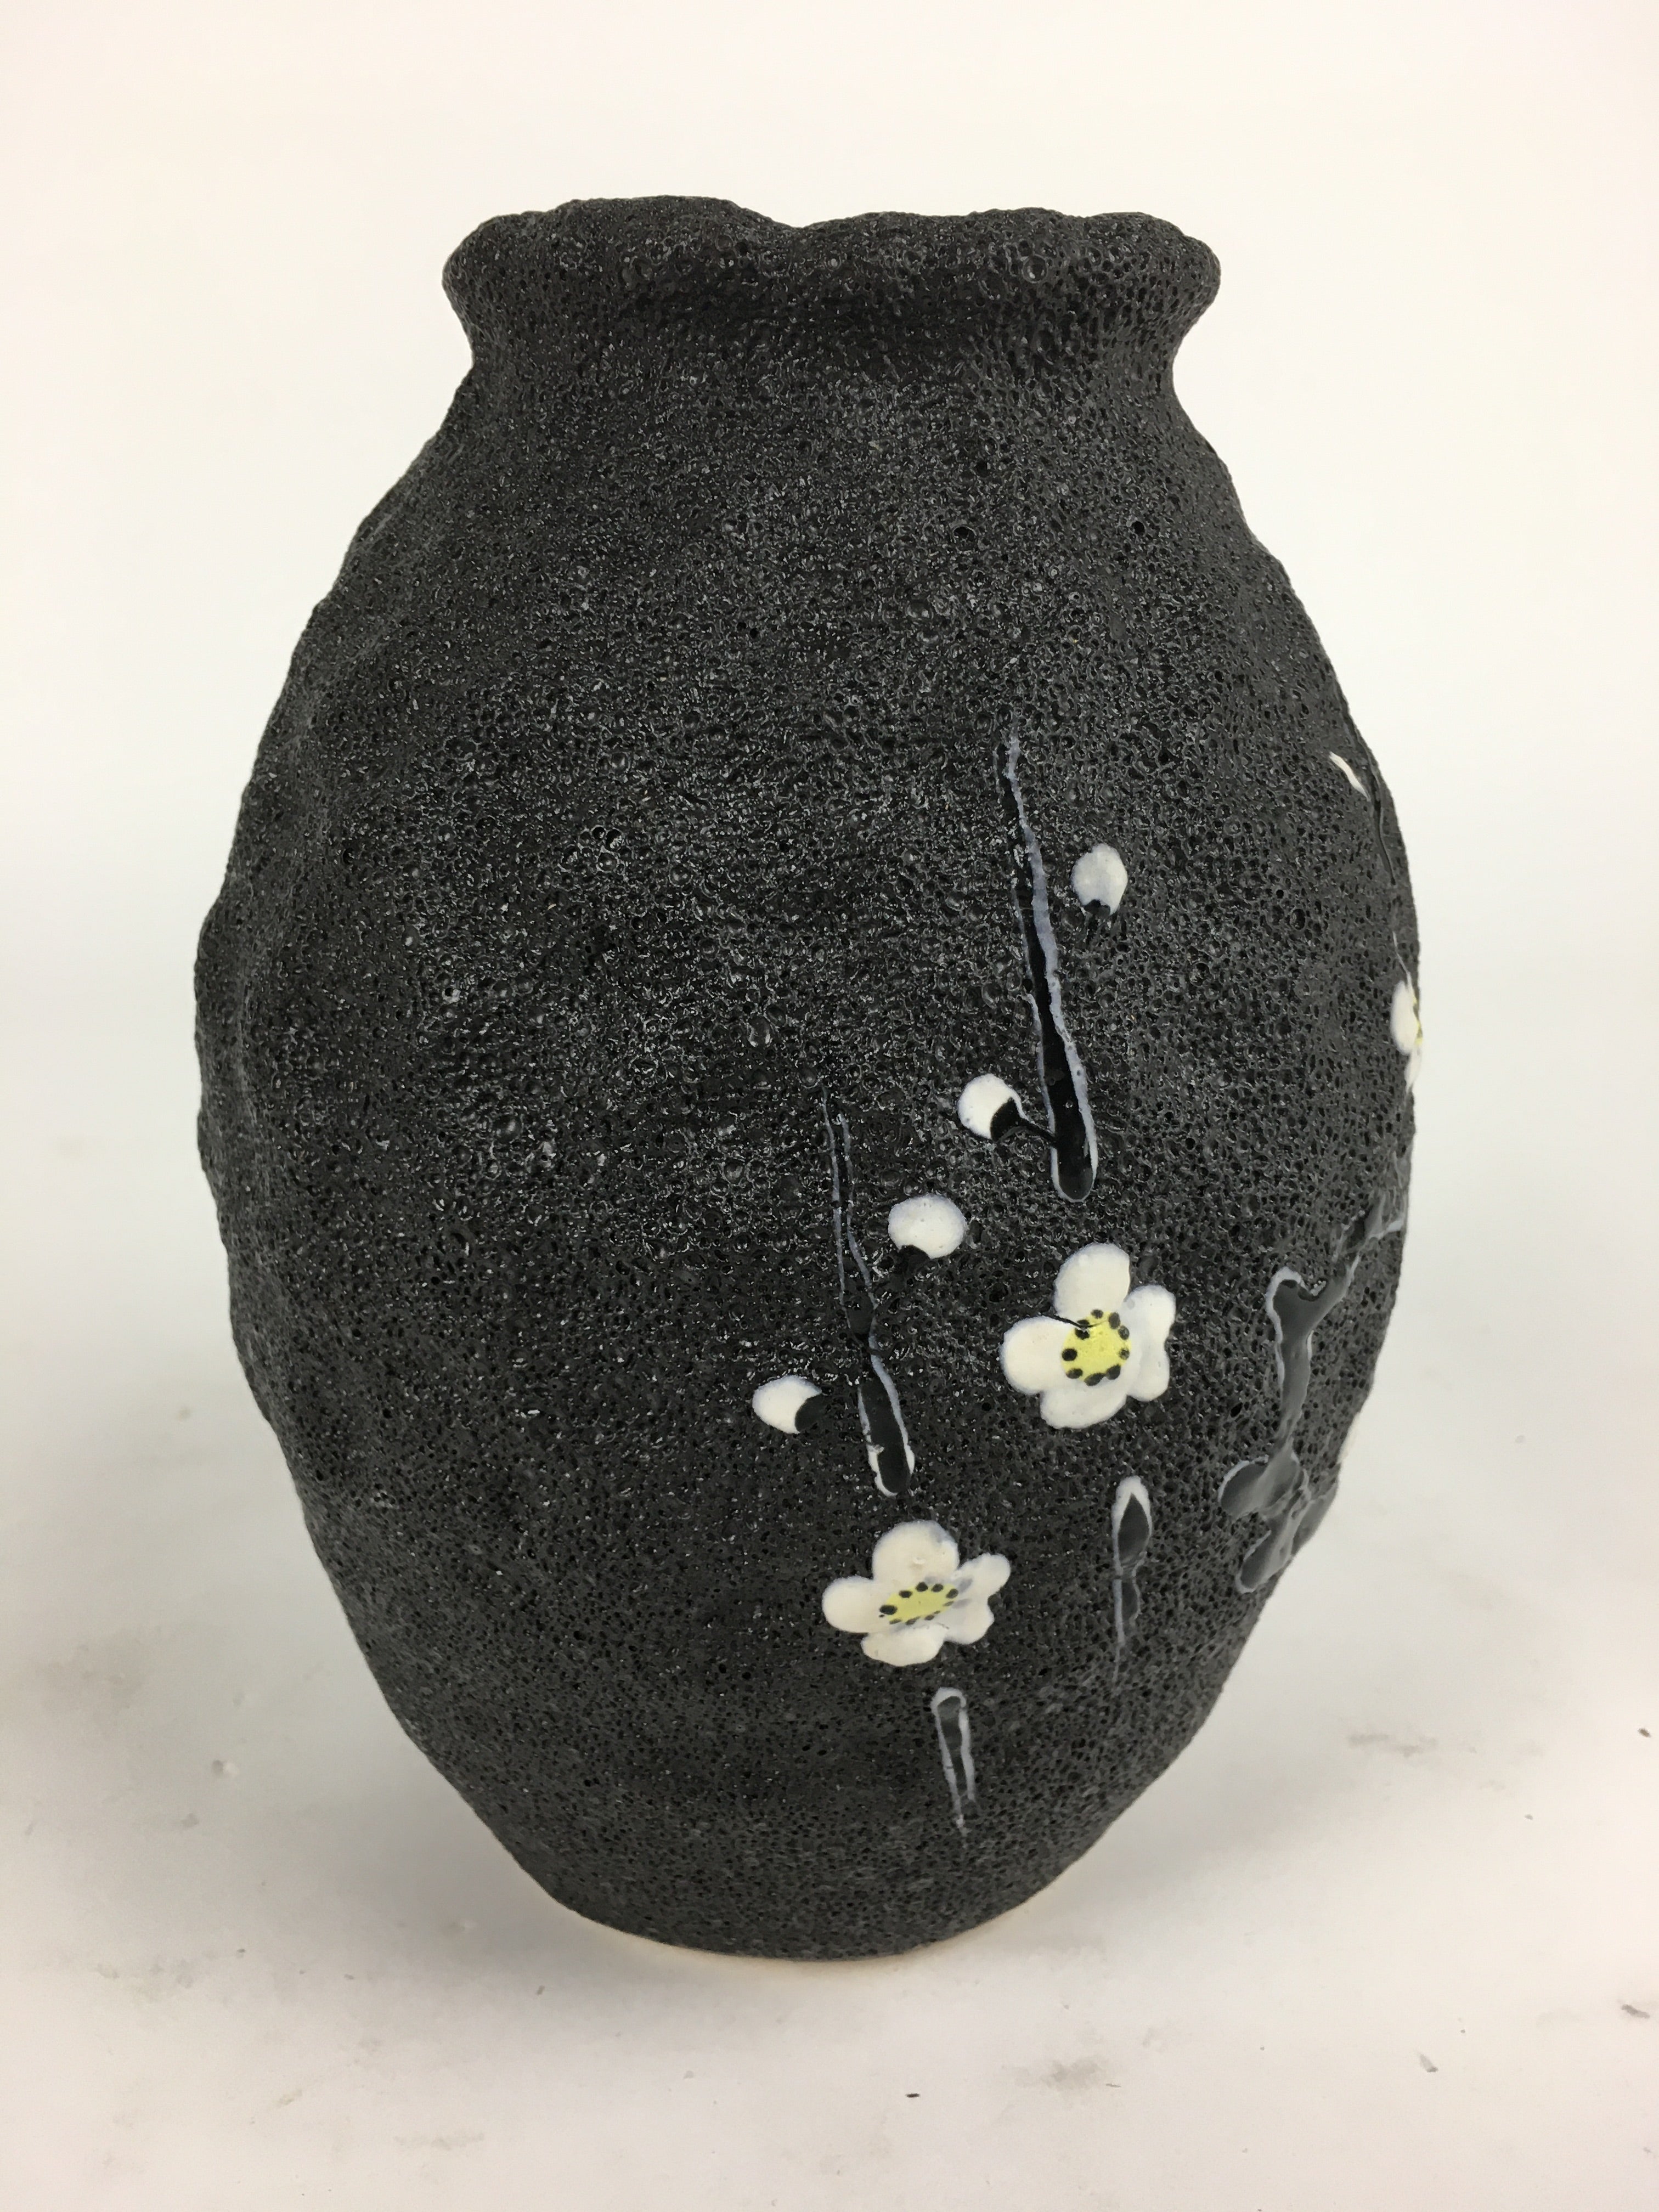 Japanese Ceramic Flower Vase Vtg Plum blossom Kabin Ikebana Arrangement FV954